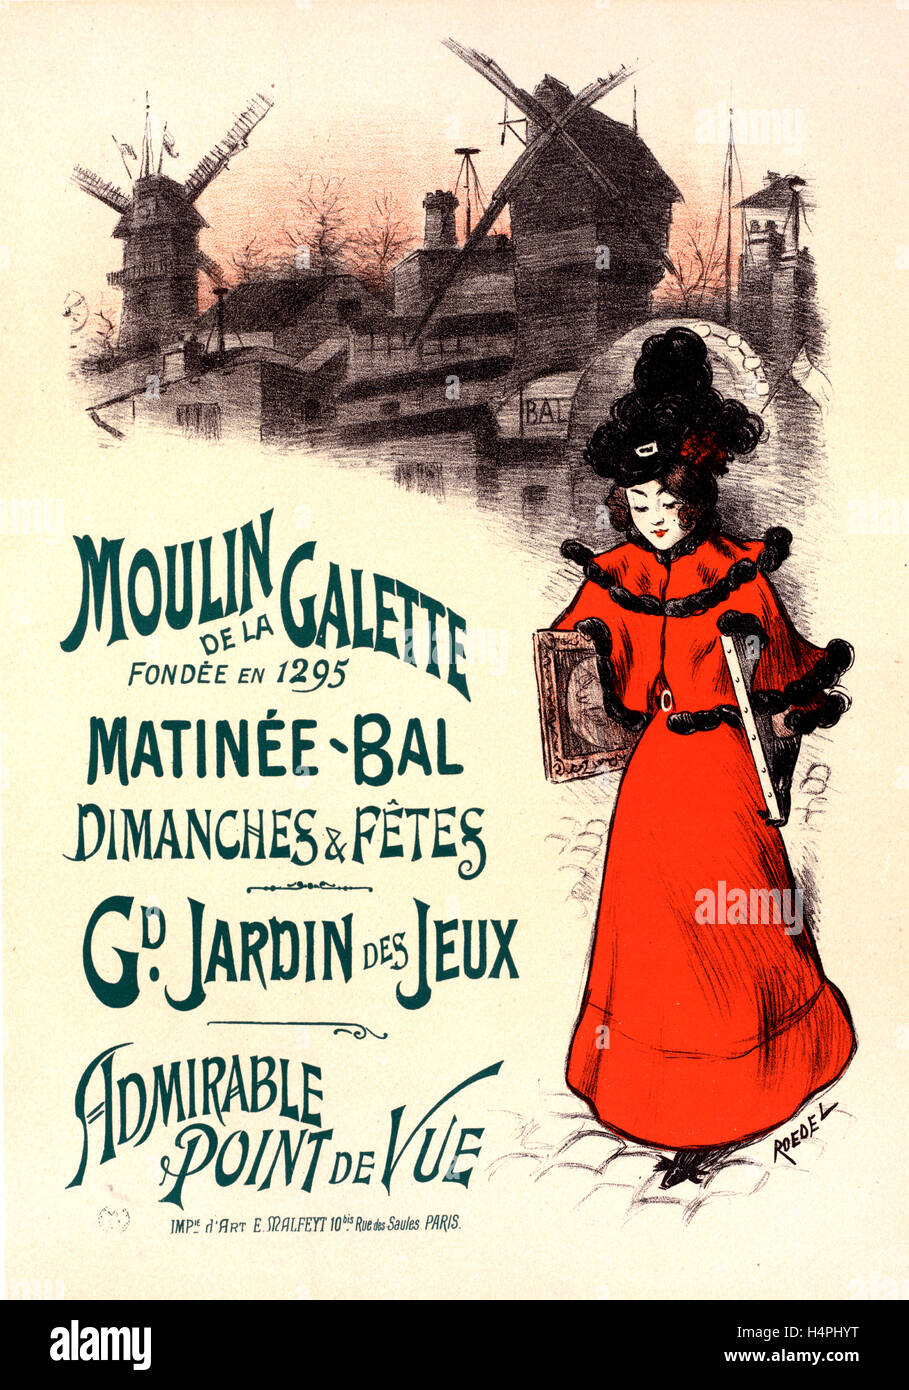 Affiche pour le Moulin de la galette. Auguste Roedel, 1859 -1900, illustrateur, affichiste, caricaturiste, aquarelliste Banque D'Images